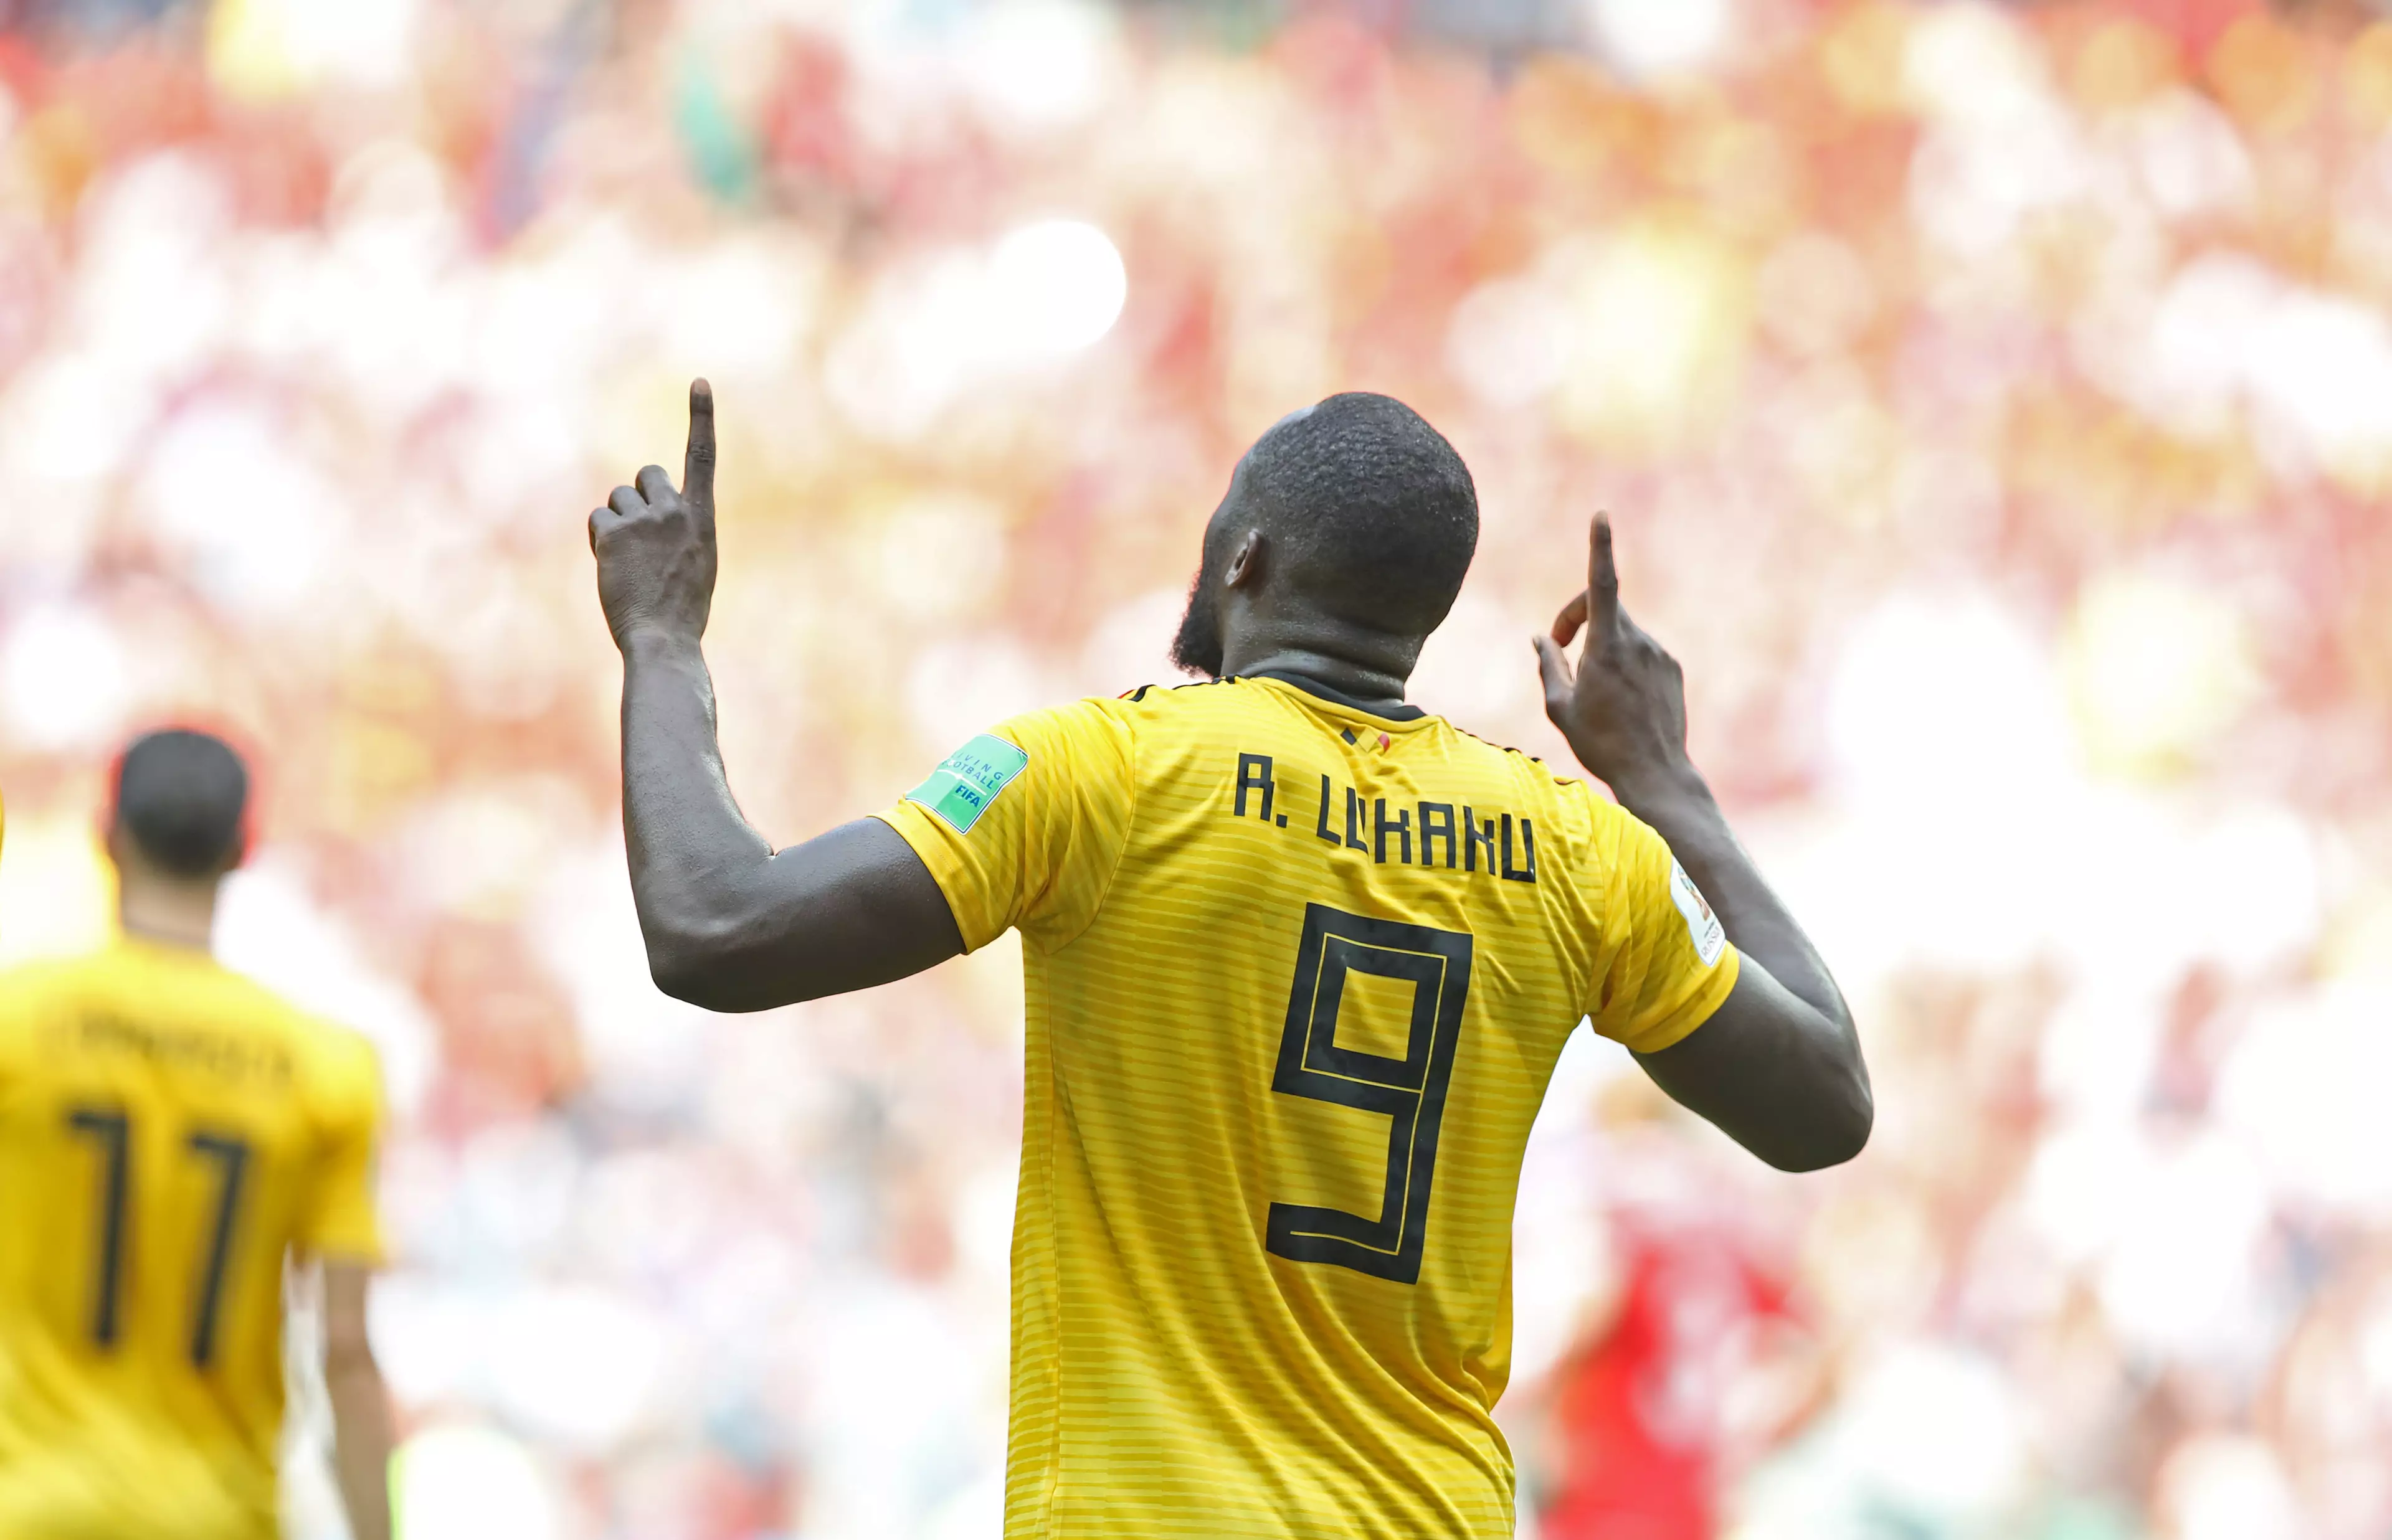 Lukaku celebrates scoring. Image: PA